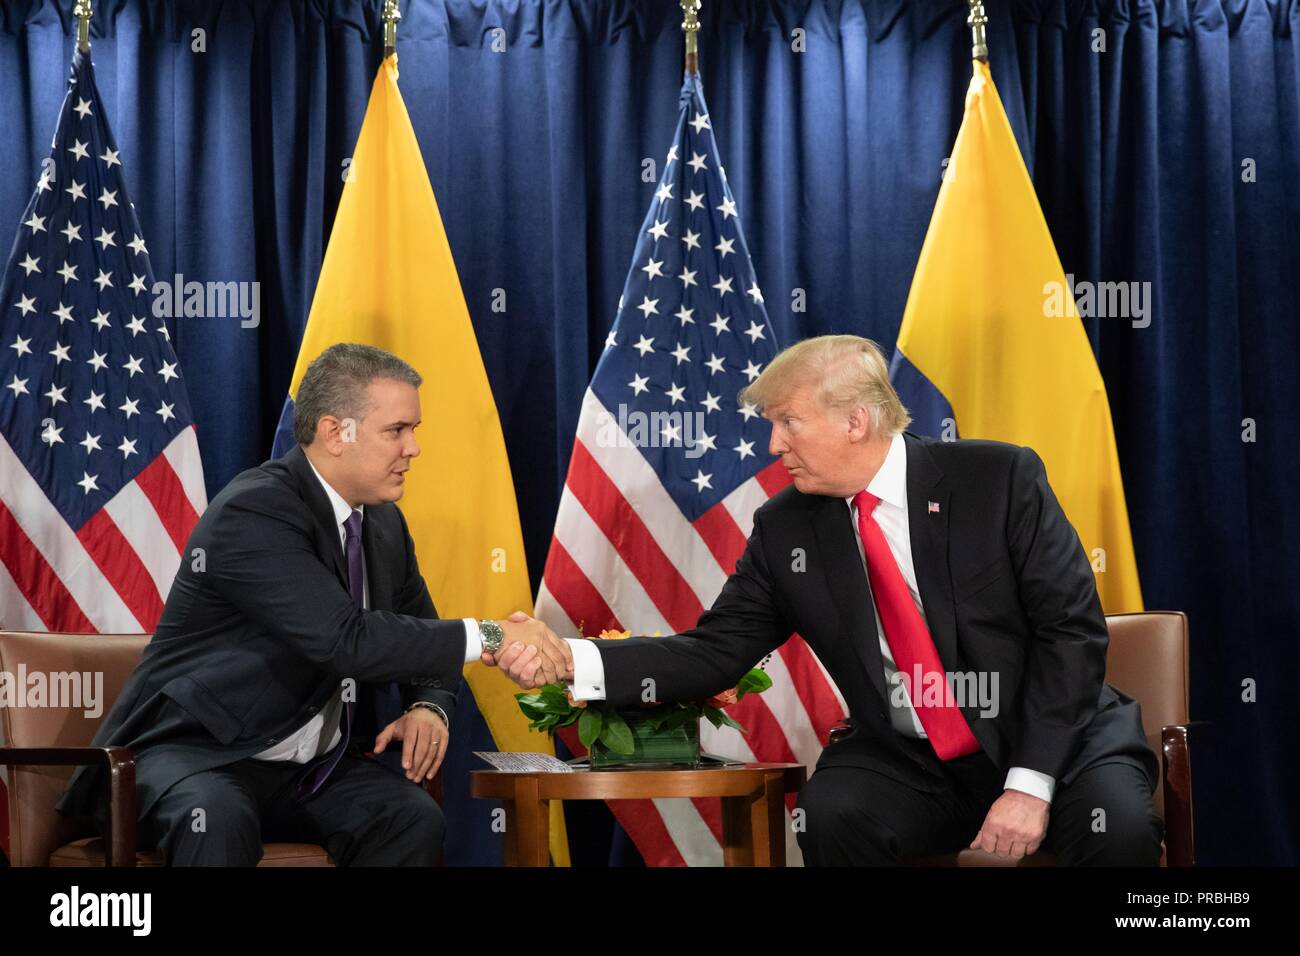 Us-Präsident Donald Trump schüttelt Hände mit der kolumbianische Präsident Ivan Duque Marquez während eines bilateralen Treffens am Rande der Generalversammlung der Vereinten Nationen treffen September 25, 2018 in New York, New York. Stockfoto